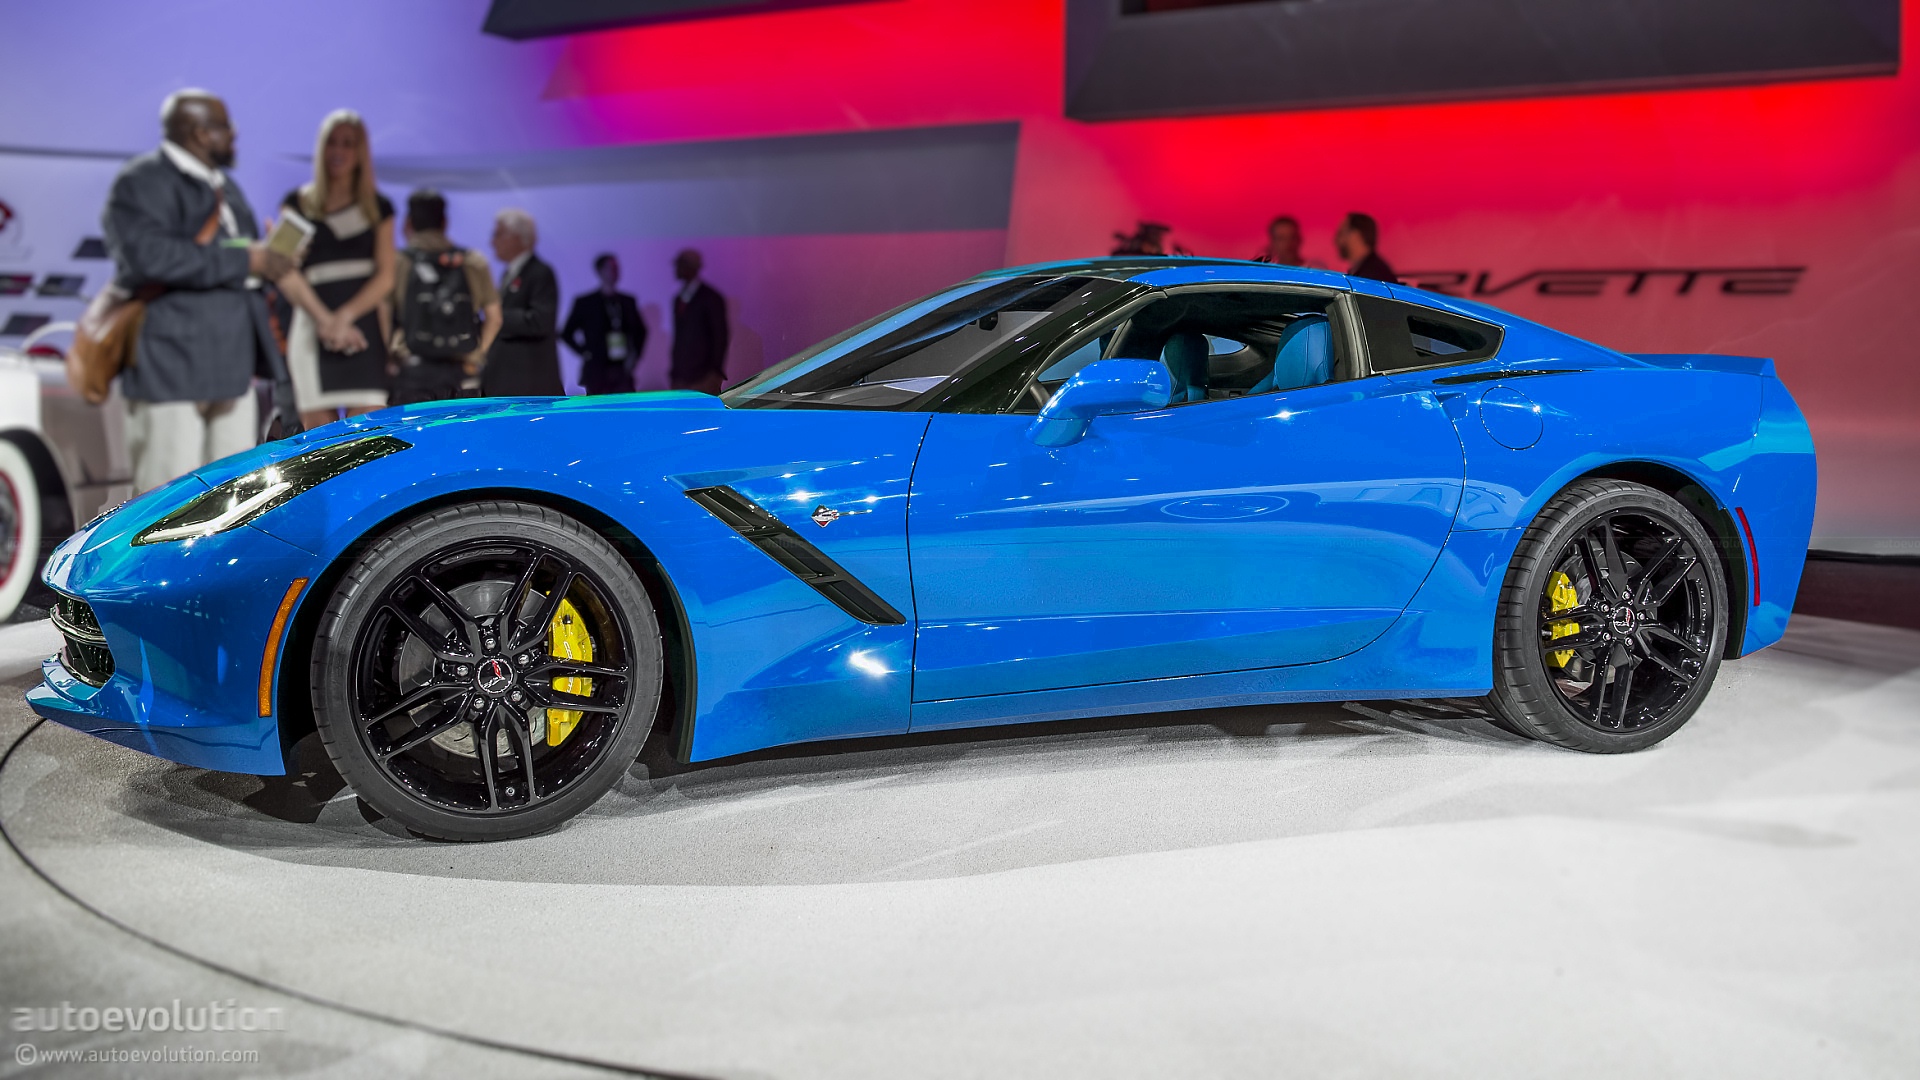 2014-corvette-c7-stingray-looks-great-in-blue_1.jpg